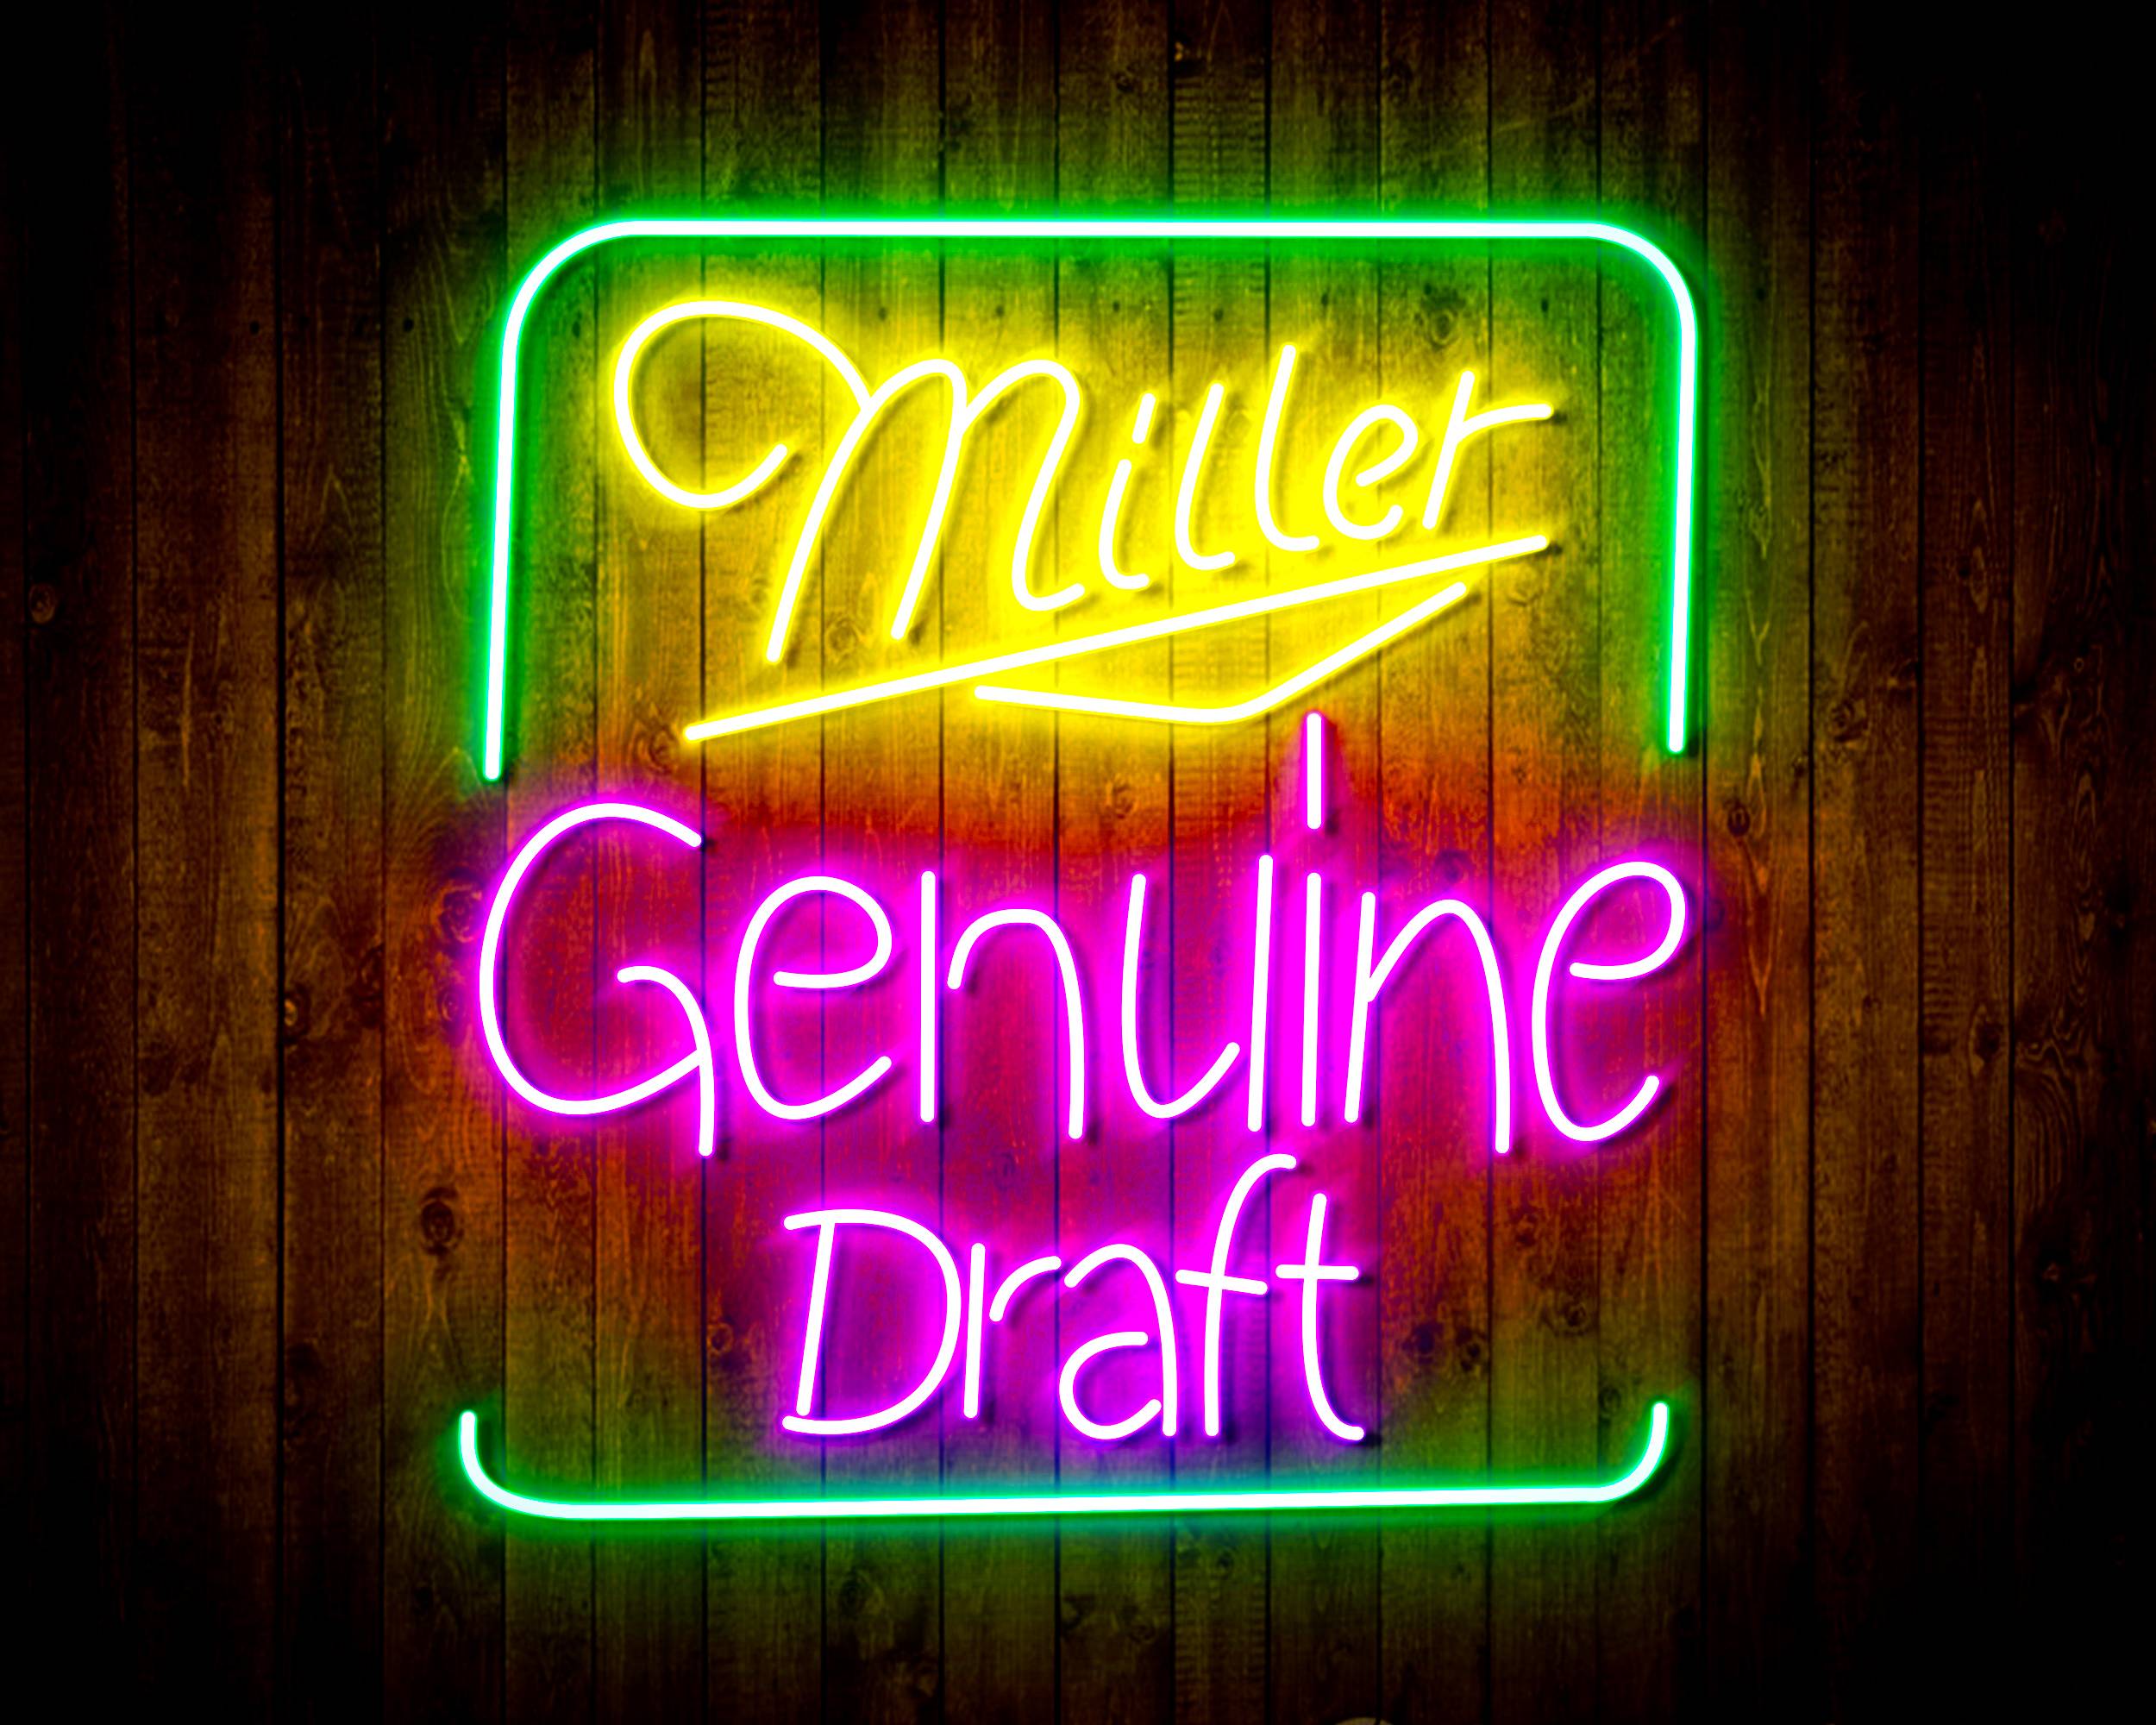 Miller Genuine Draft Handmade Neon Flex LED Sign